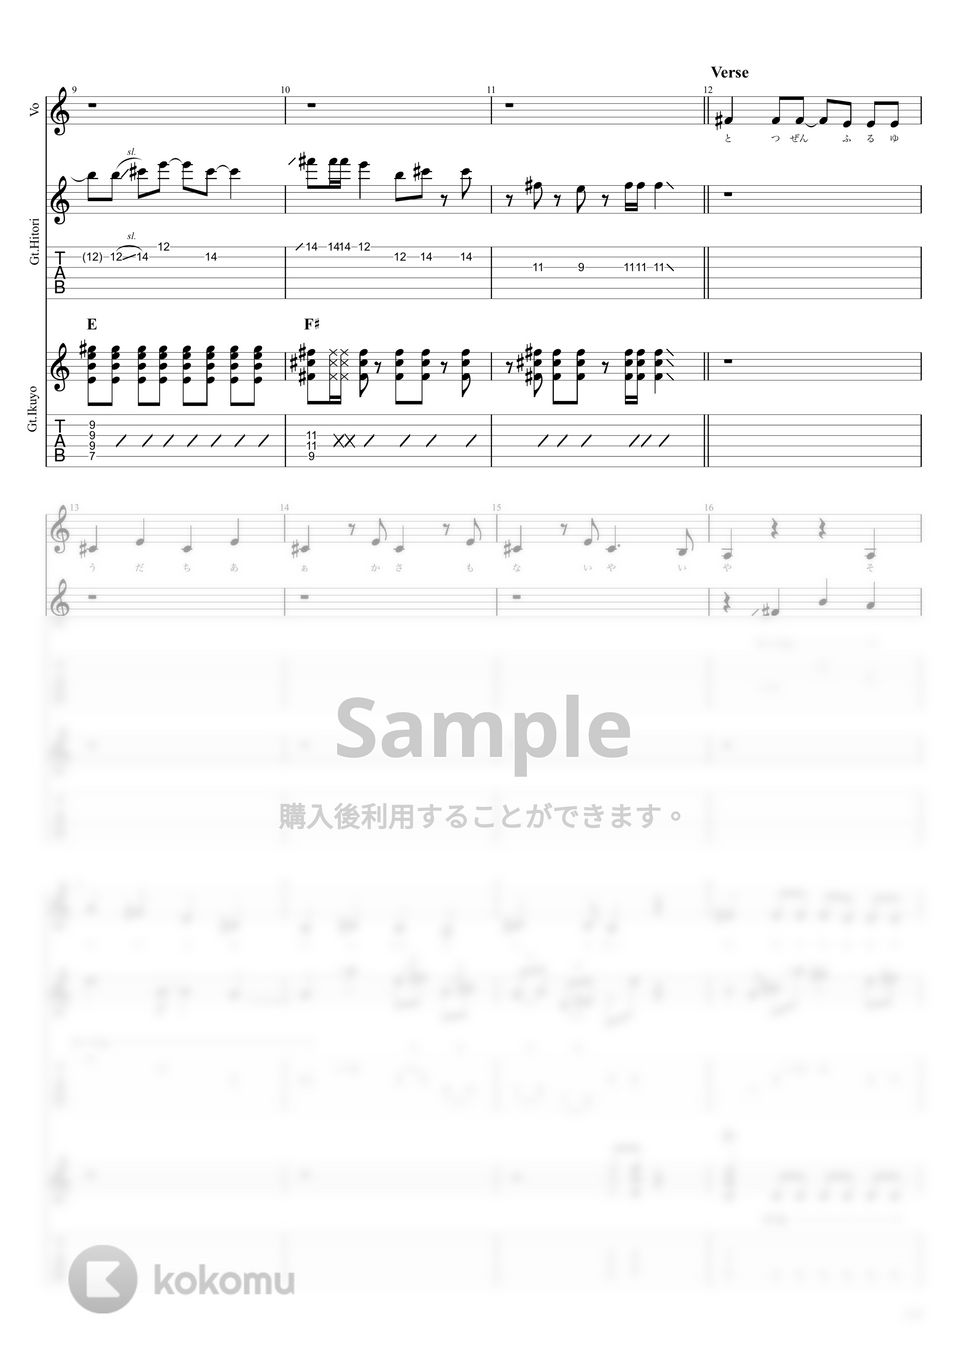 結束バンド - ギターと孤独と蒼い惑星  LIVE at STARRY (後藤ひとり&喜多郁代 Part) by キリギリス